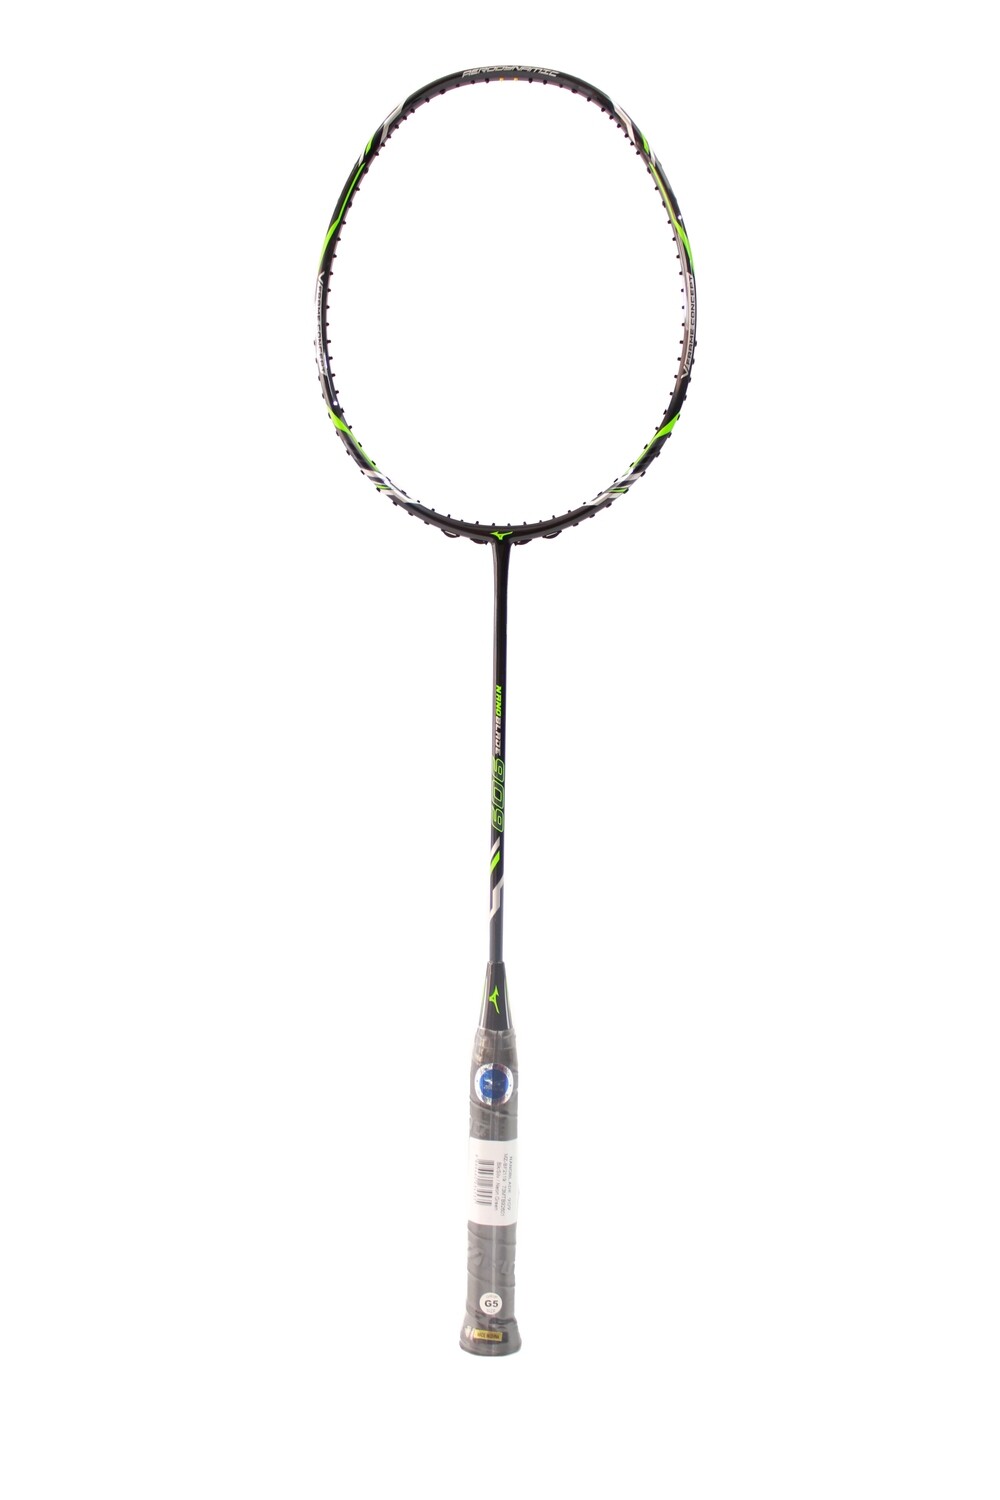 Mizuno NanoBlade 909 Black/Lime Badminton Racquet